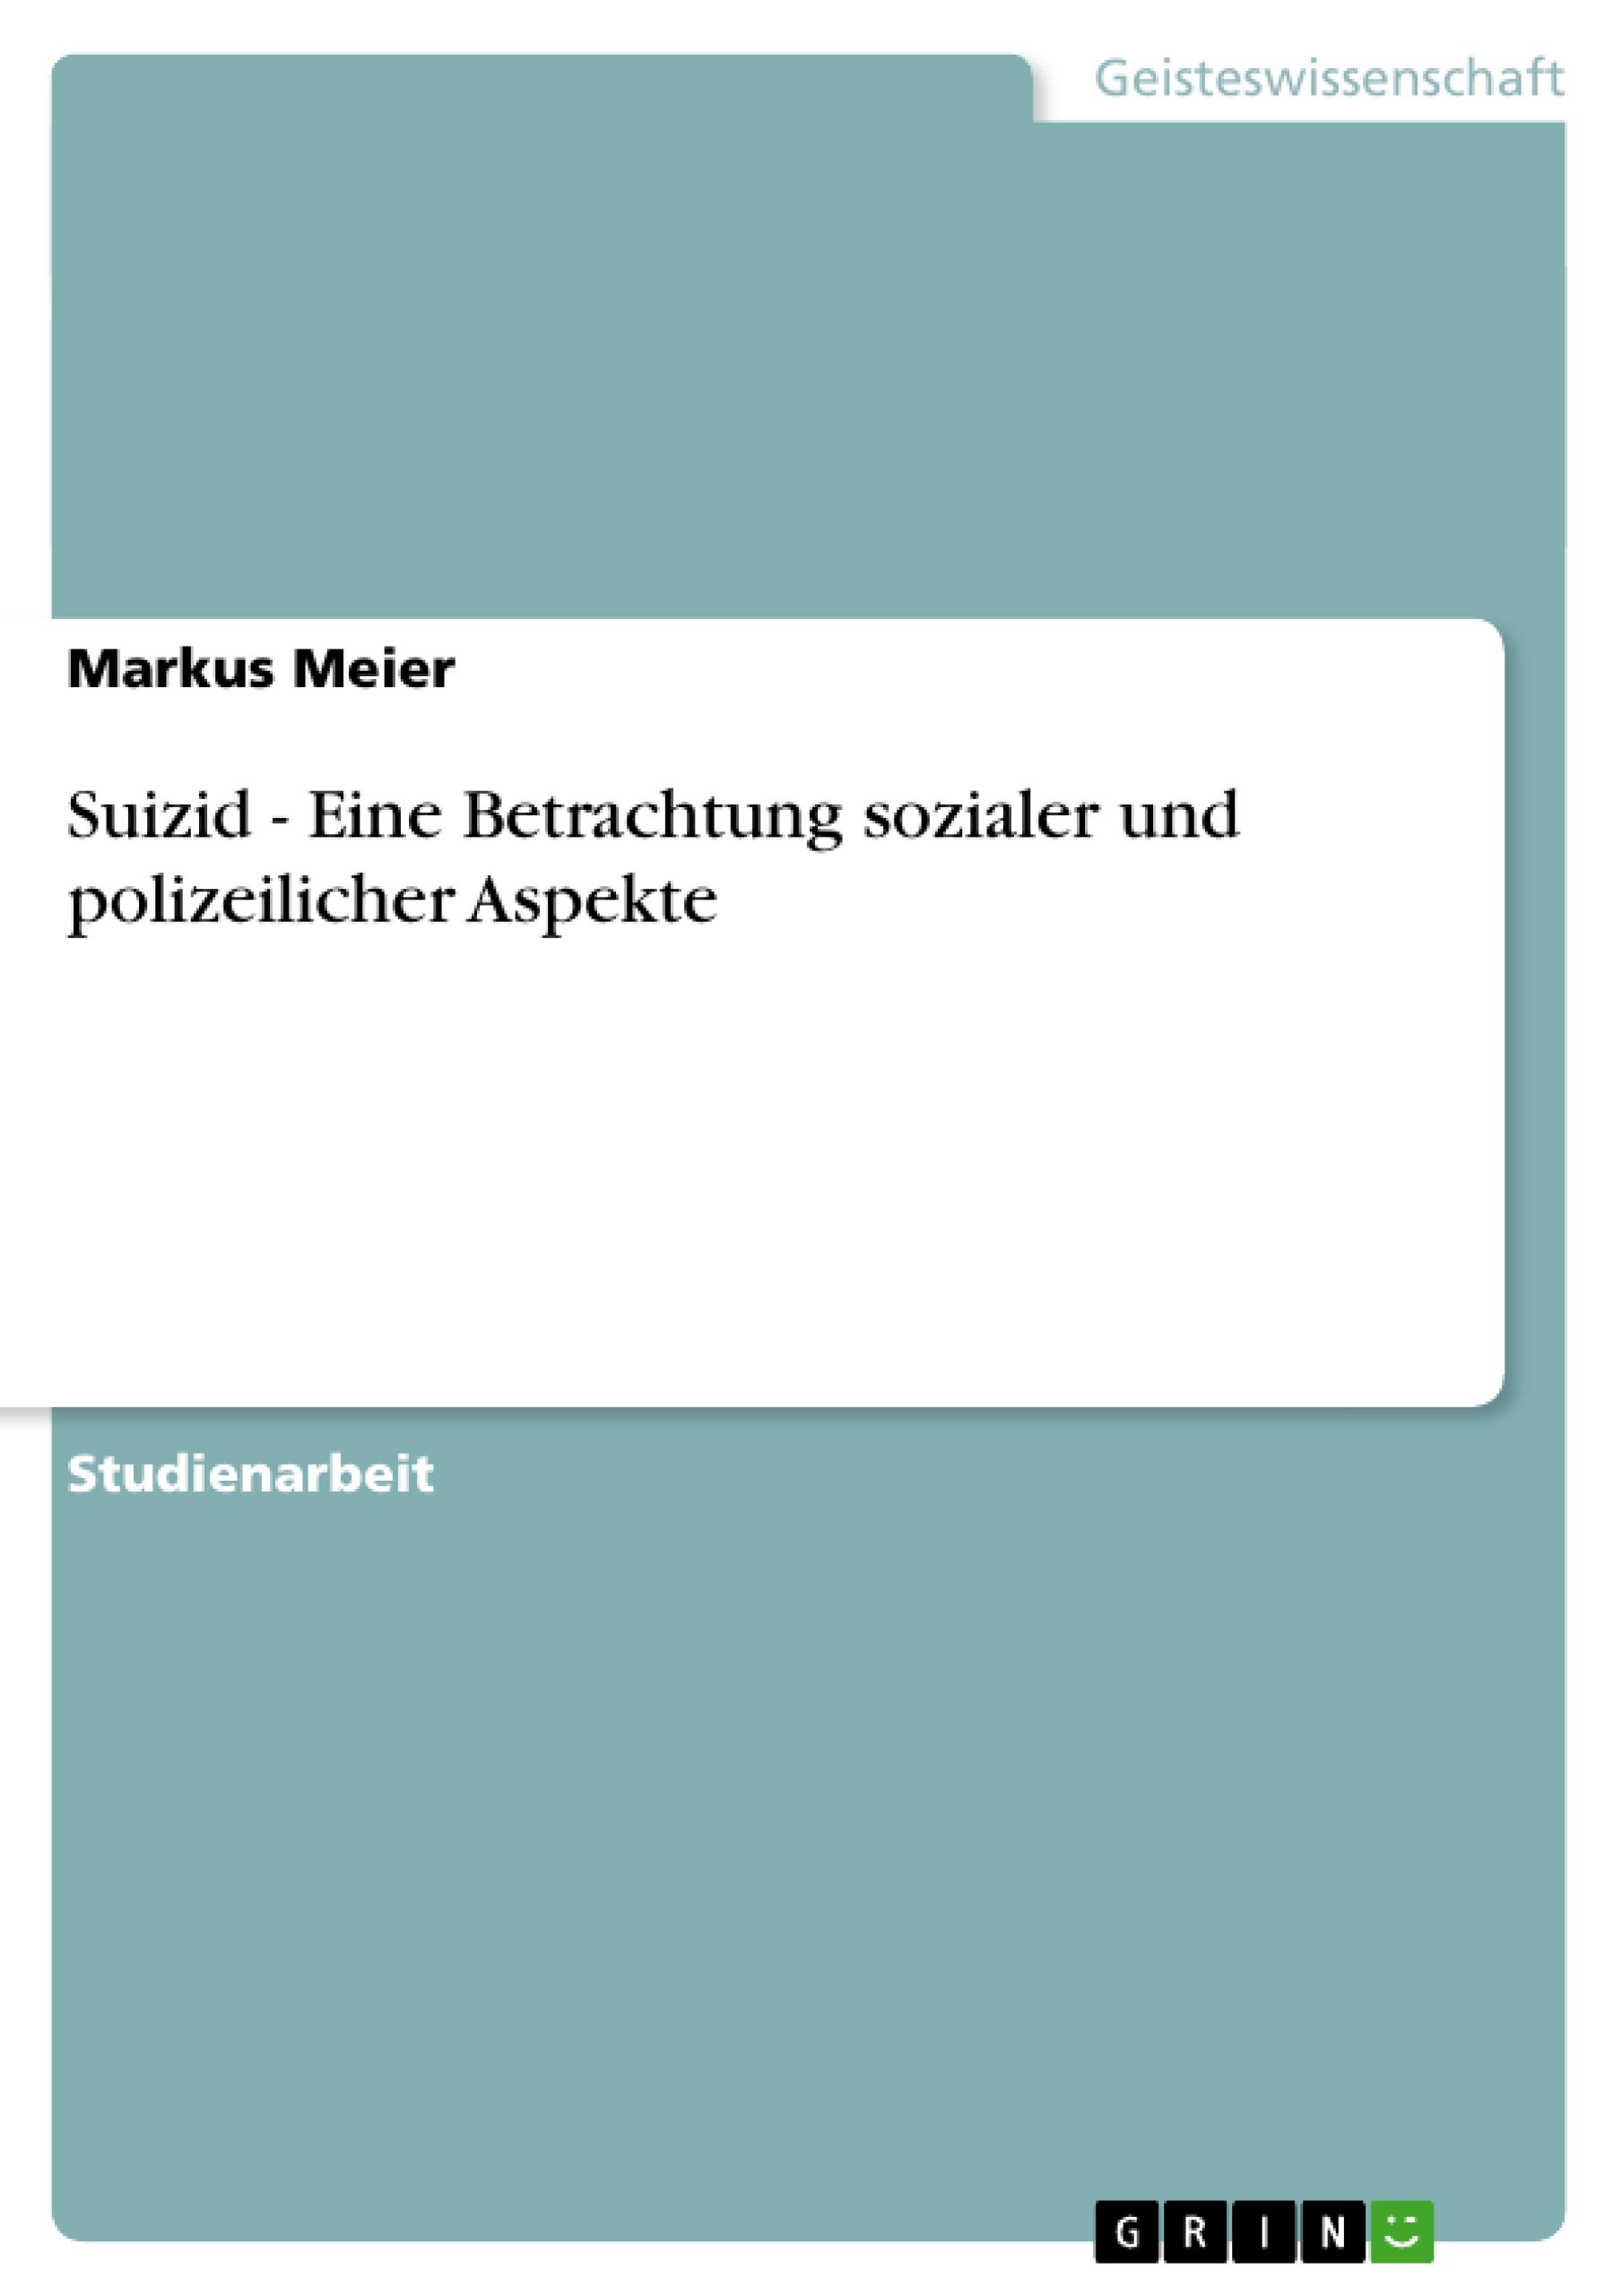 Suizid - Eine Betrachtung sozialer und polizeilicher Aspekte / Markus Meier / Taschenbuch / Paperback / 28 S. / Deutsch / 2007 / GRIN Verlag / EAN 9783638658997 - Meier, Markus